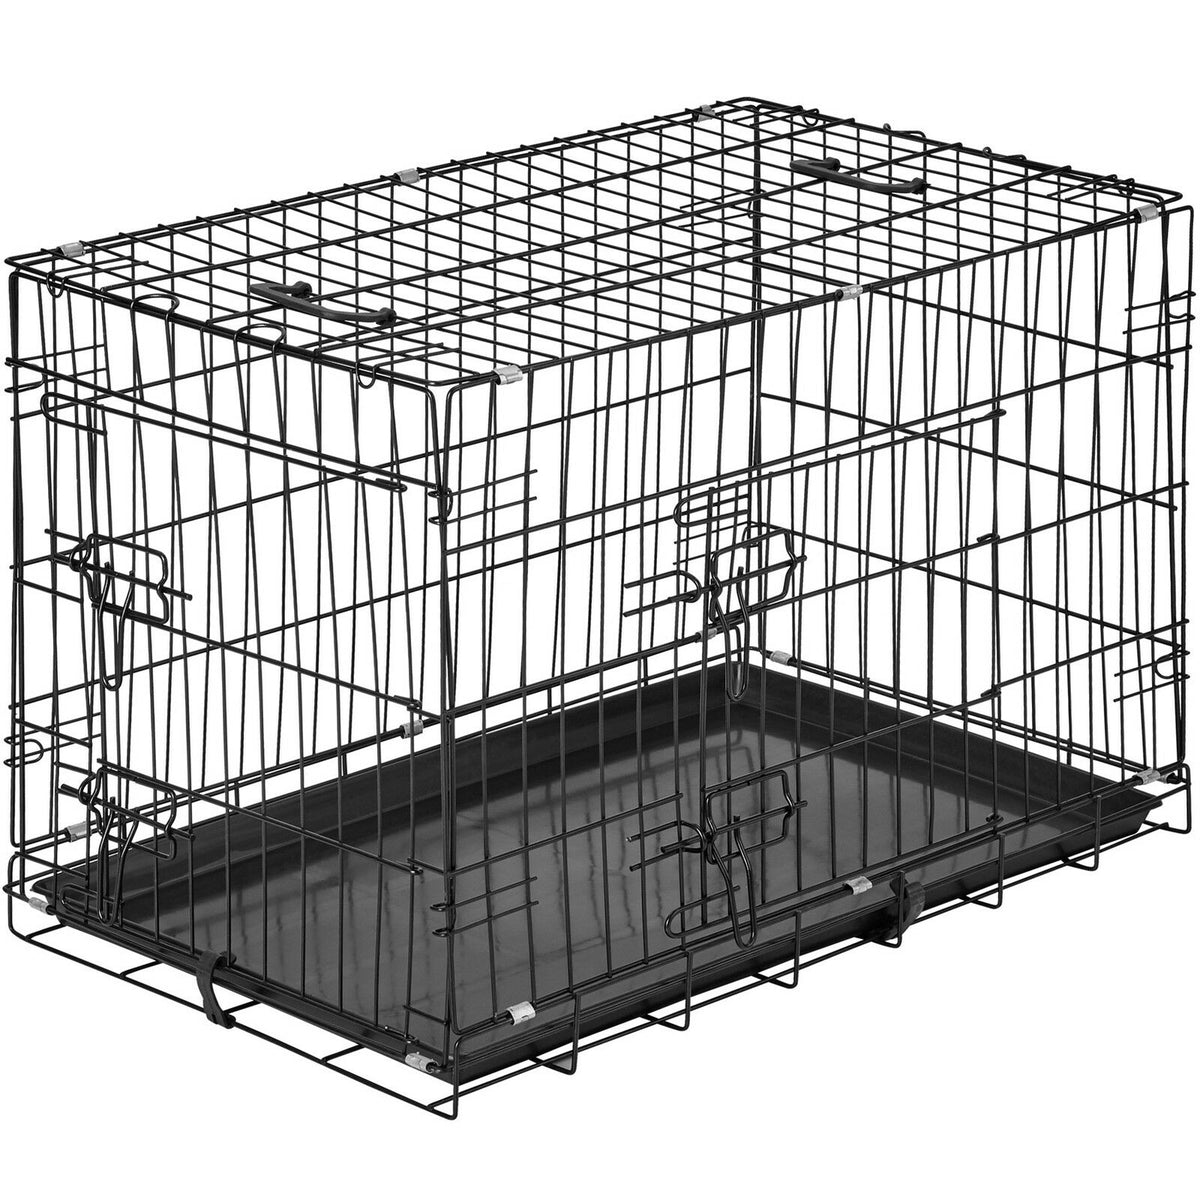 Cage pliable pour chien en acier 76 x 47cm – ToutPositif